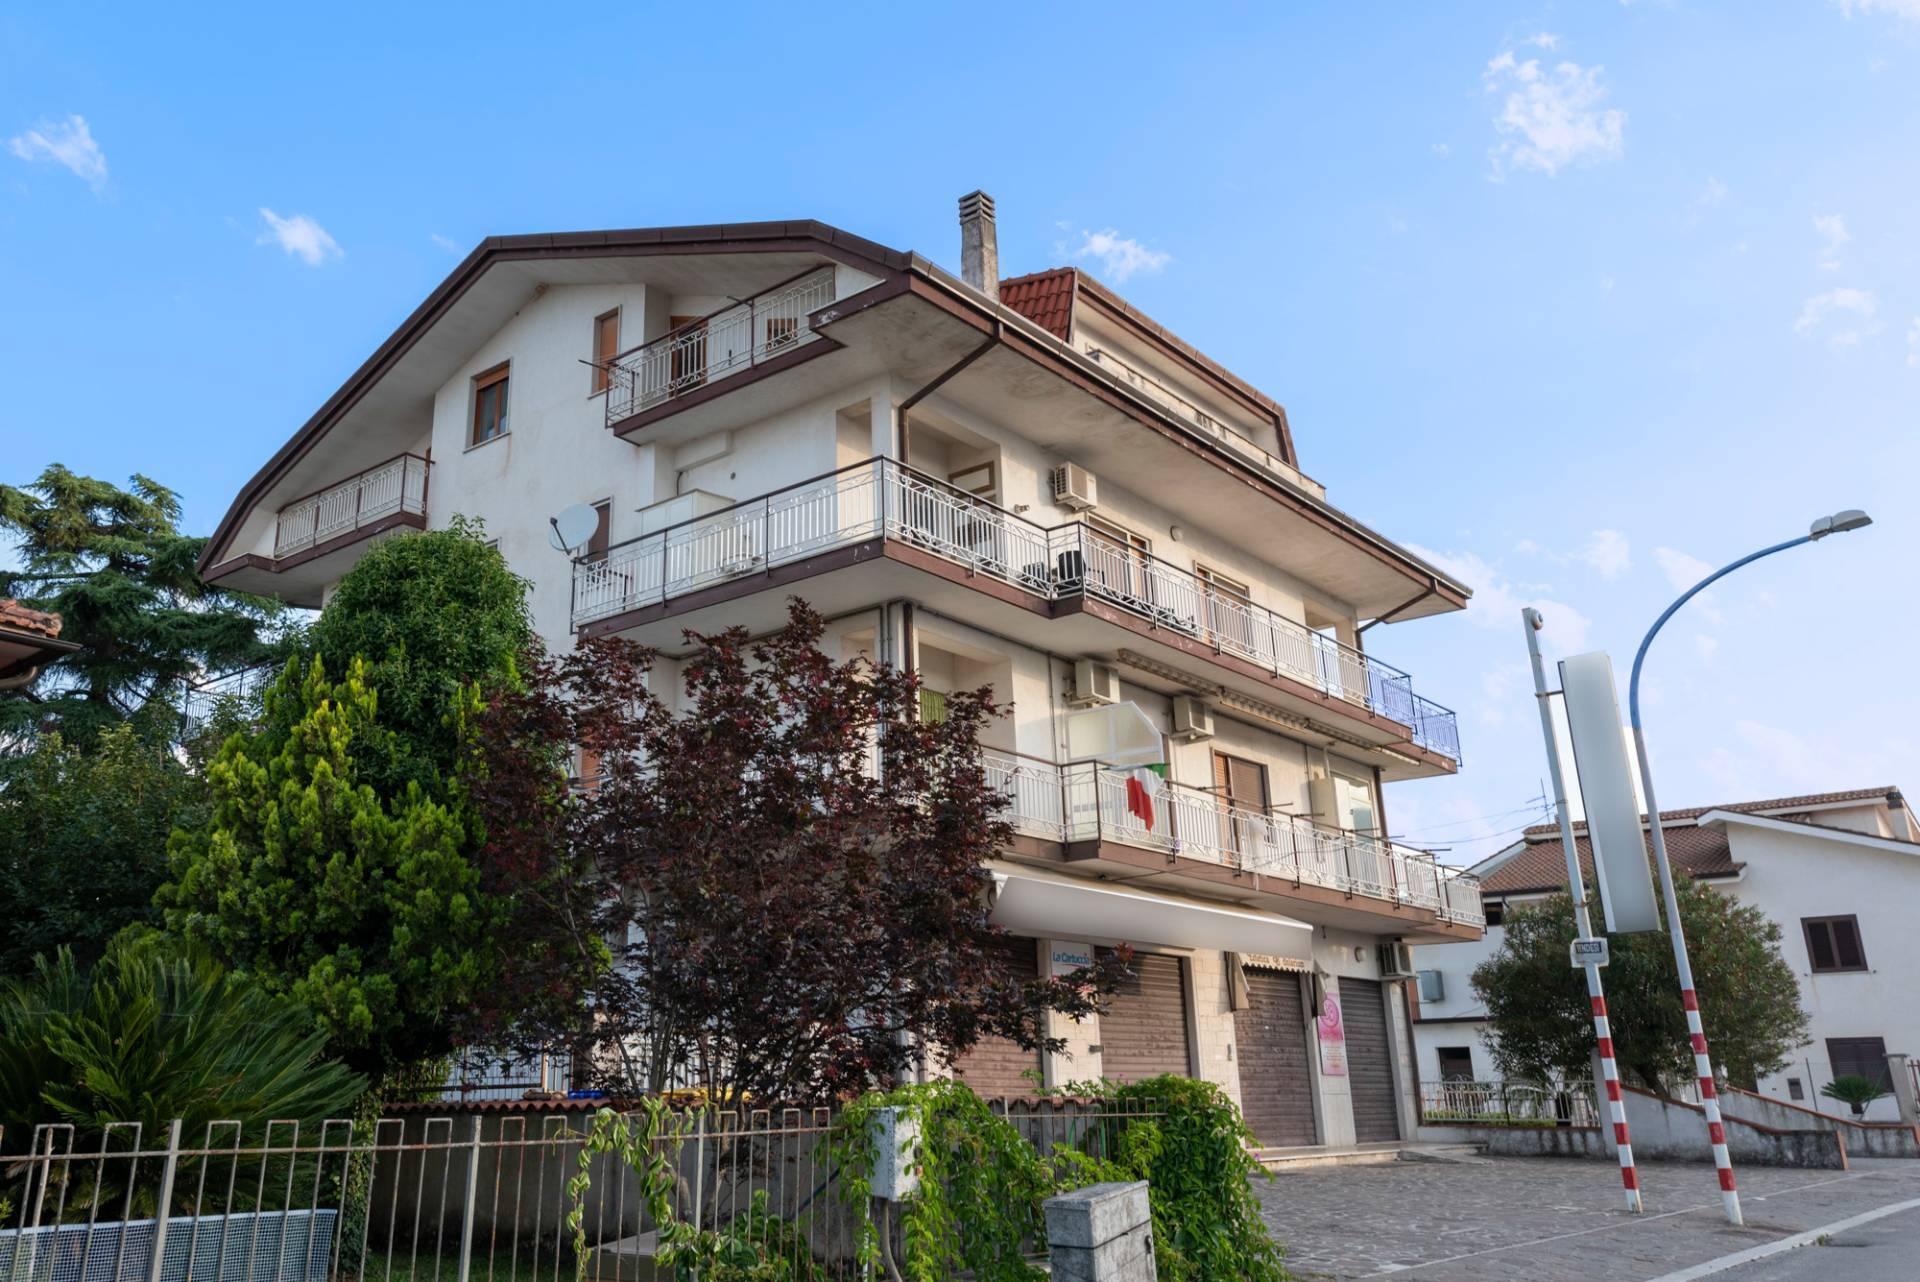 Appartamento in vendita a Roccasecca, 7 locali, zona Località: Stazione, prezzo € 99.000 | PortaleAgenzieImmobiliari.it